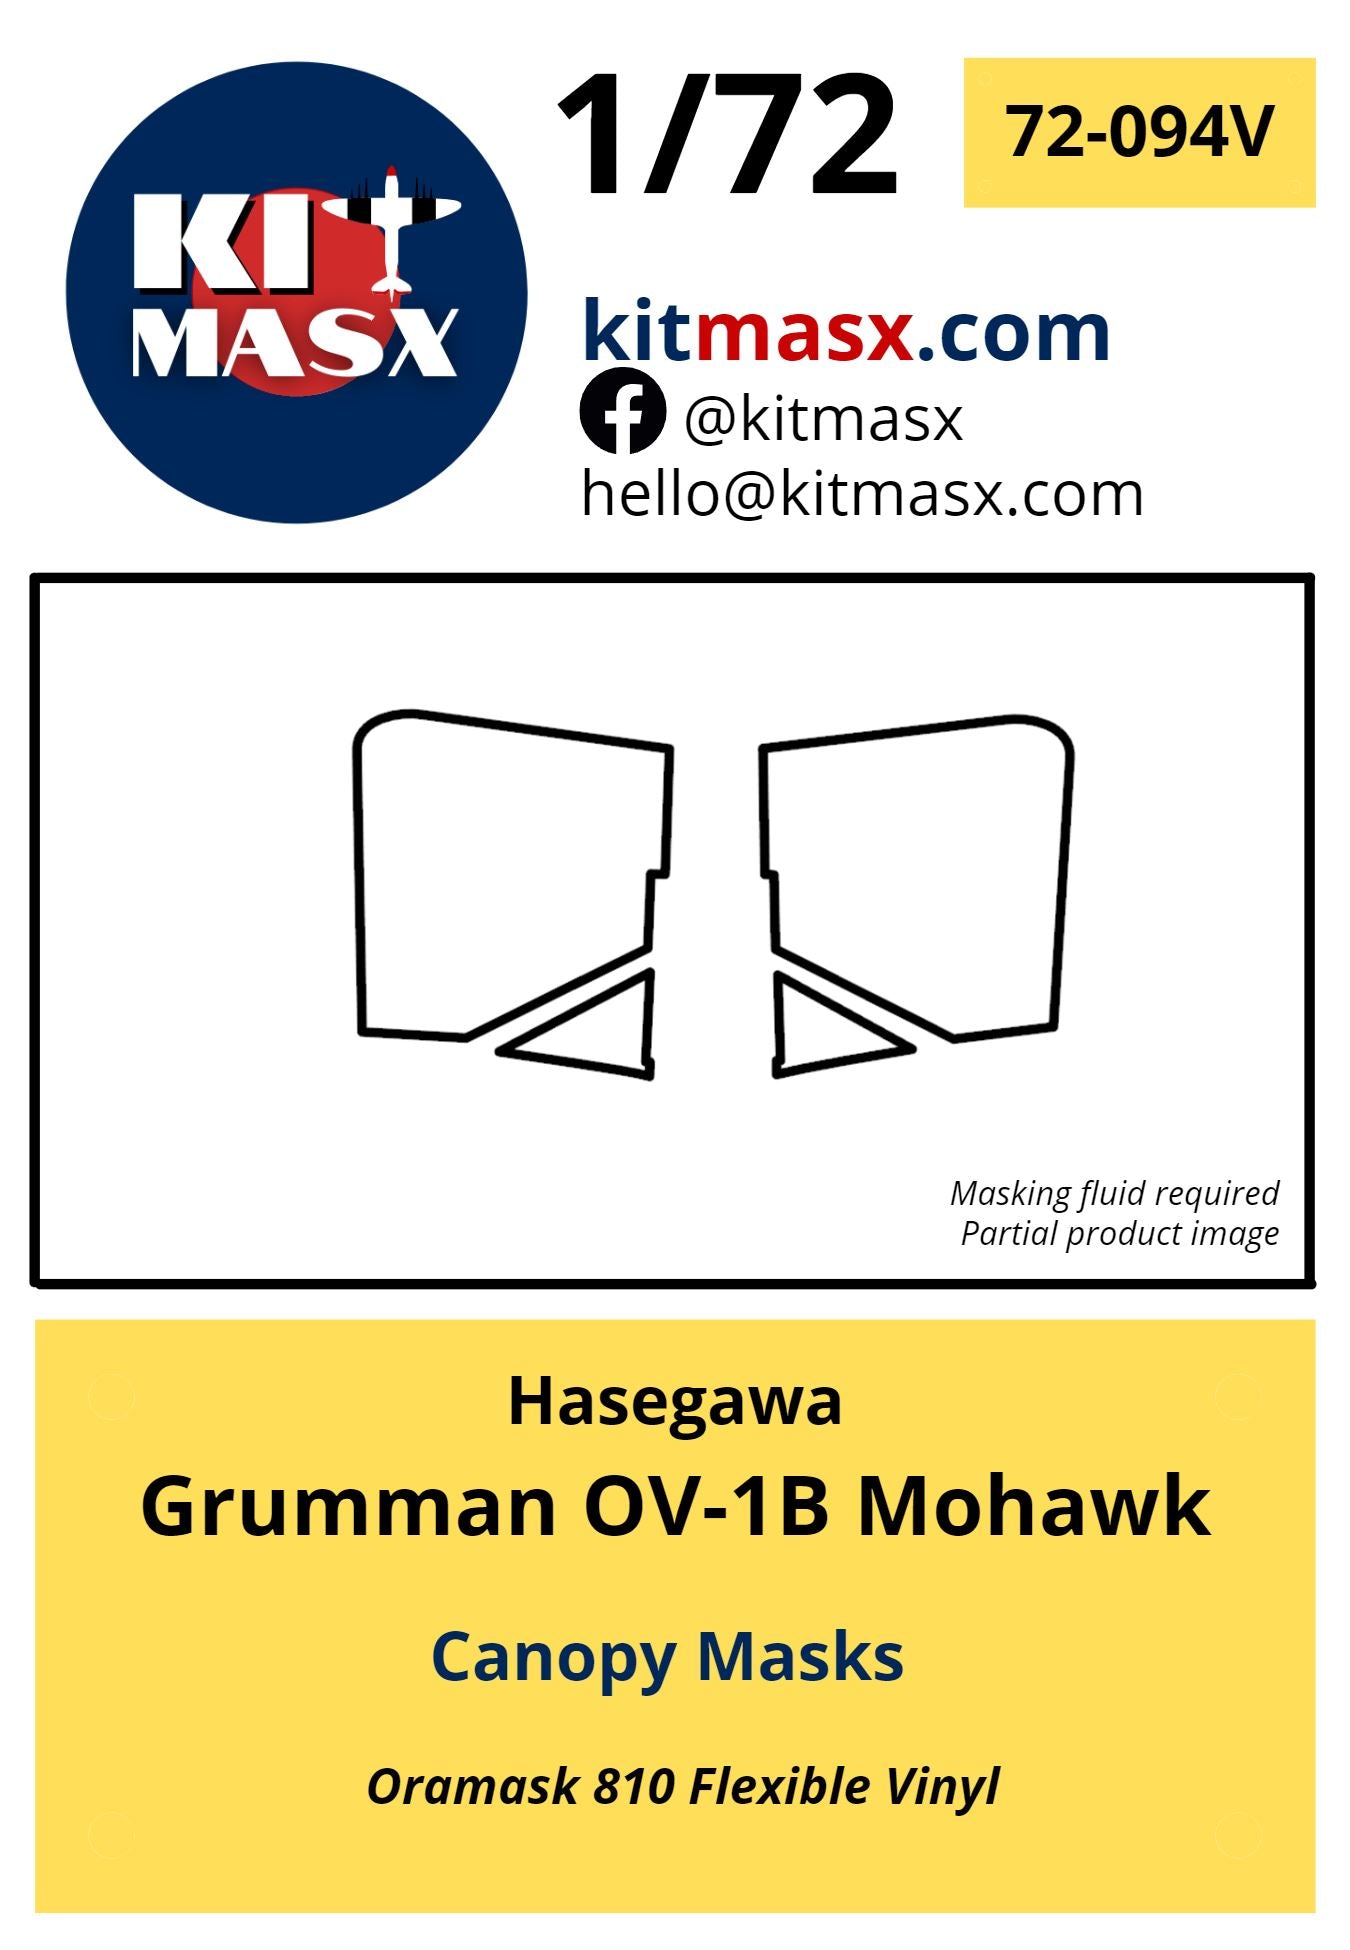 Hasegawa Grumman OV-1B Mohawk Canopy Masks Kit Masx 